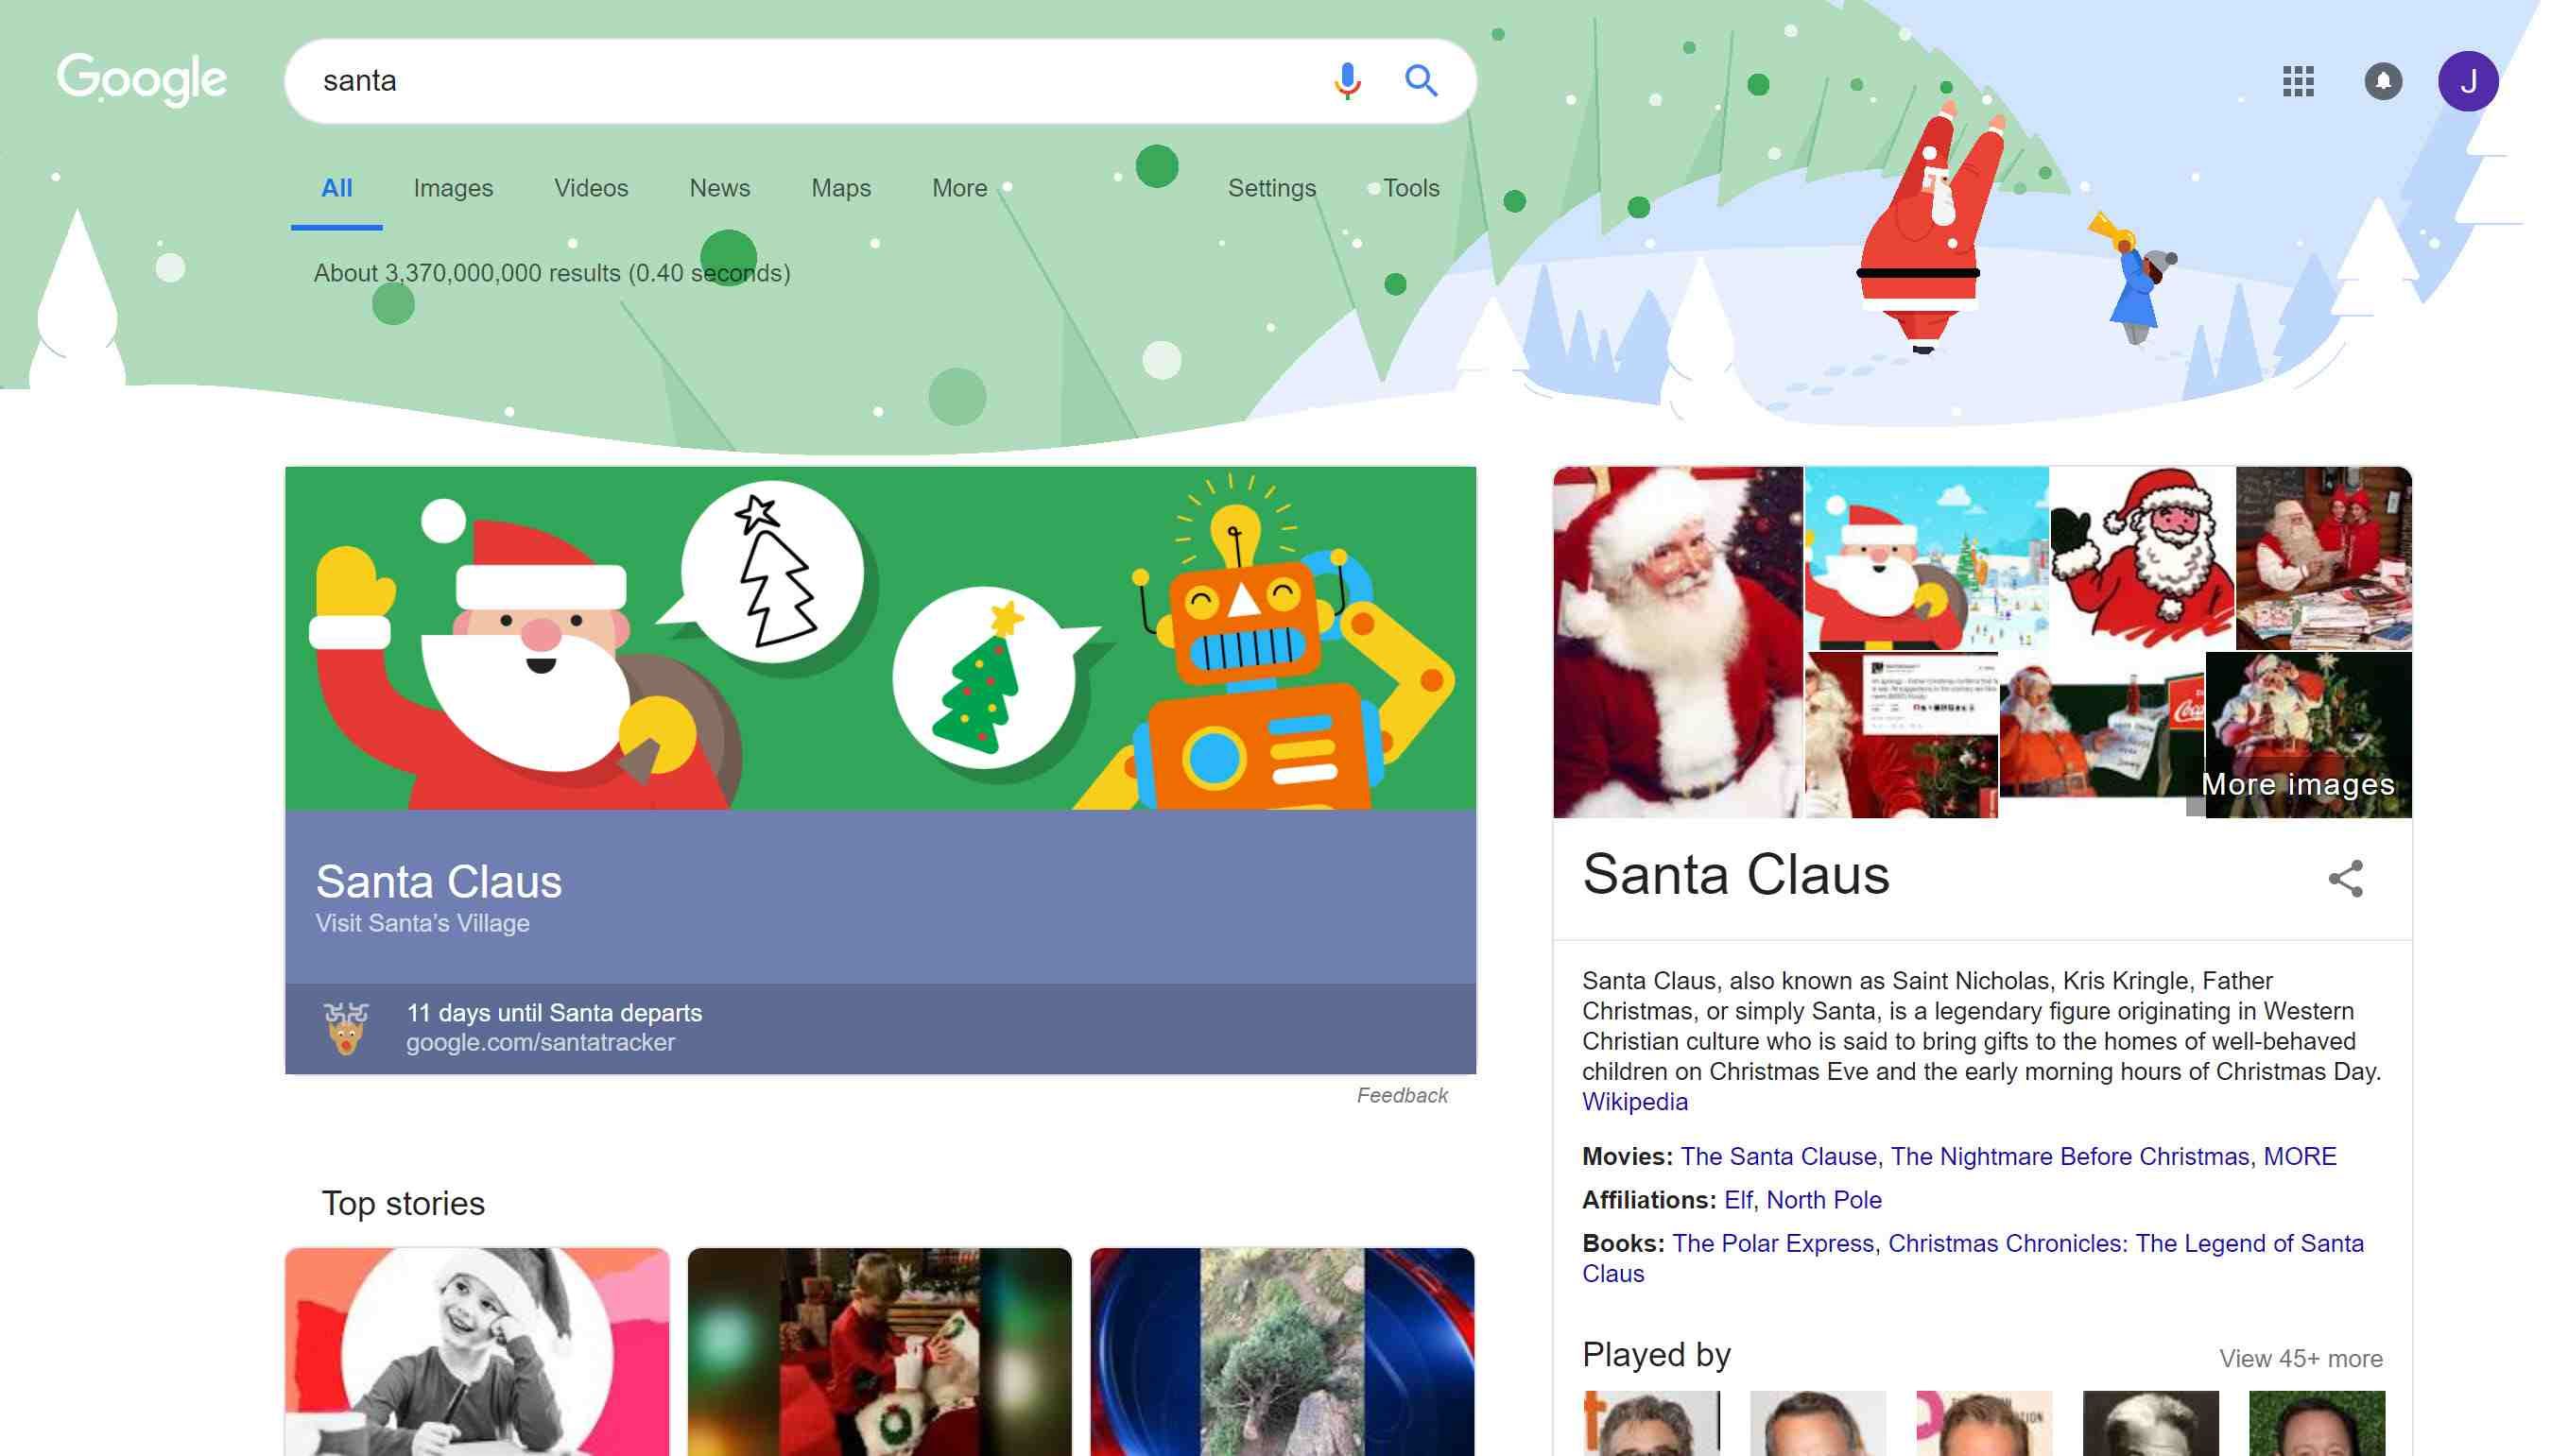 Снимок экрана со страницей результатов поиска при использовании Google Santa.